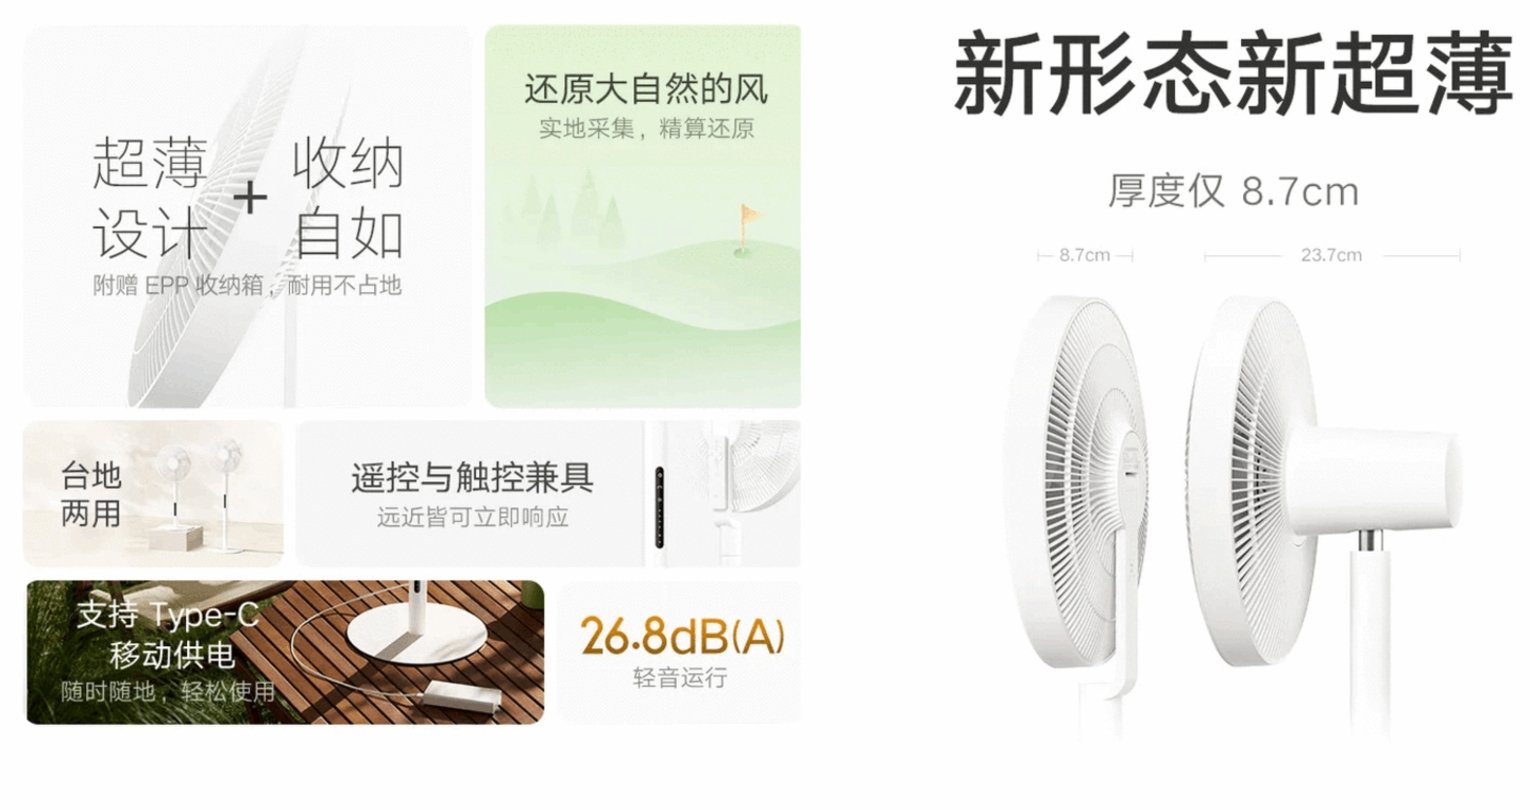 Lo último de Xiaomi es un ventilador inteligente con HyperOS que es capaz de simular el viento natural